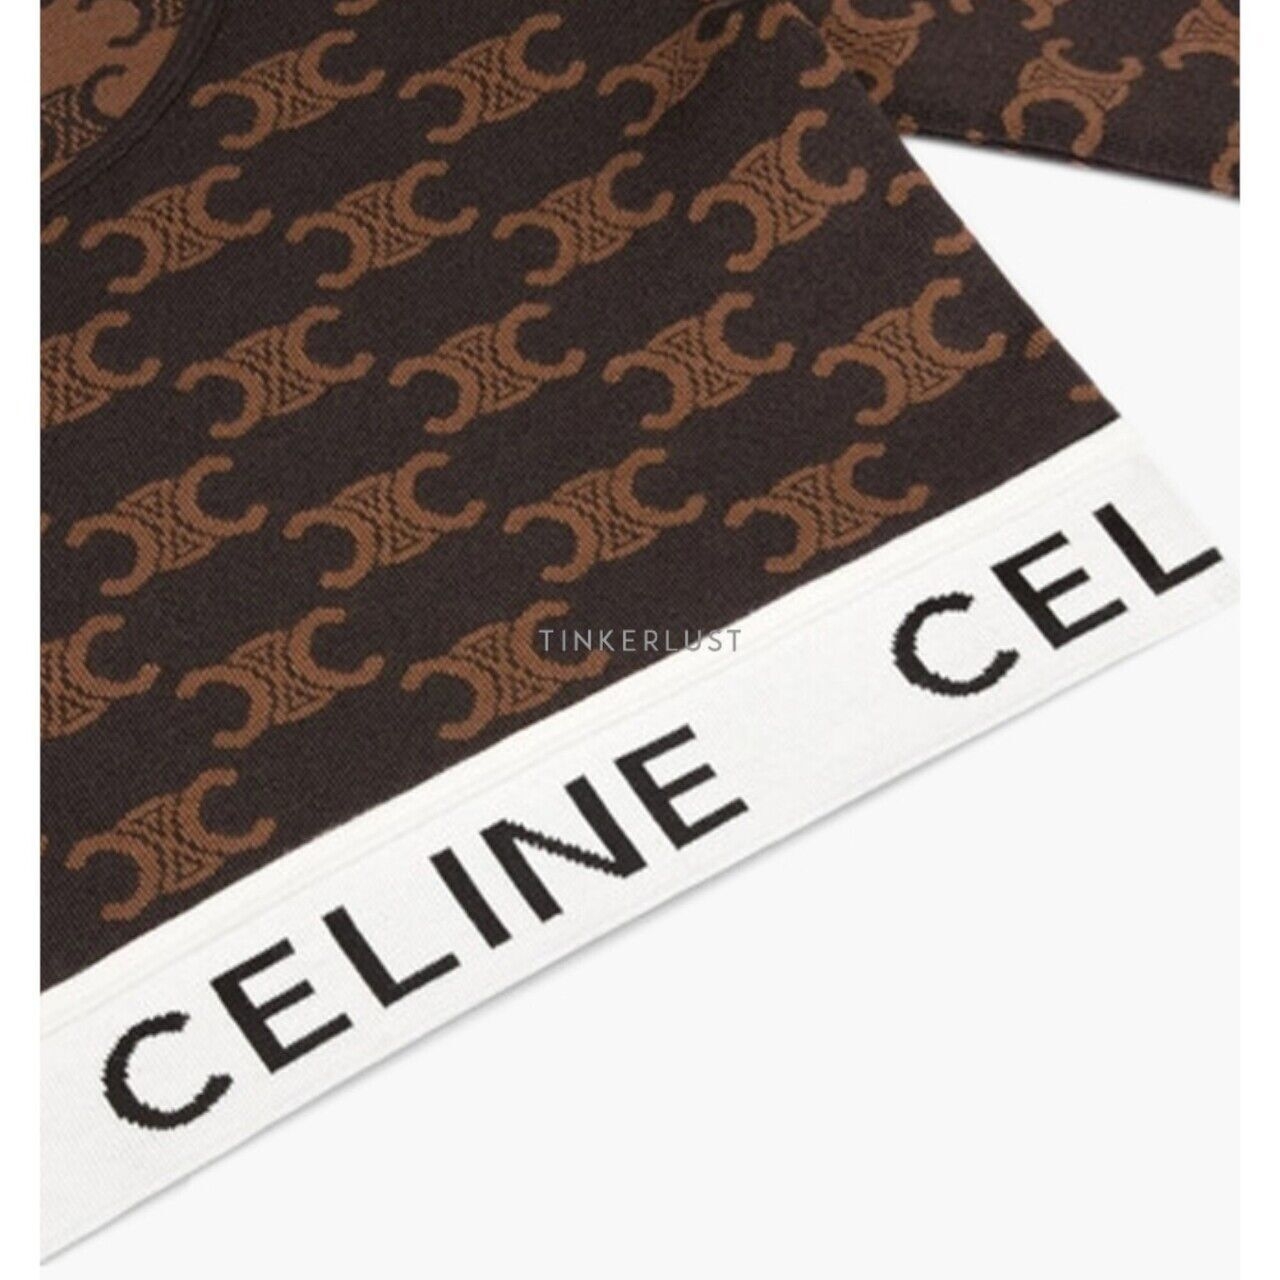 Celine Women Monogram Triomphe Long Sleeves Crop Top in Black/Tan Silk Cotton